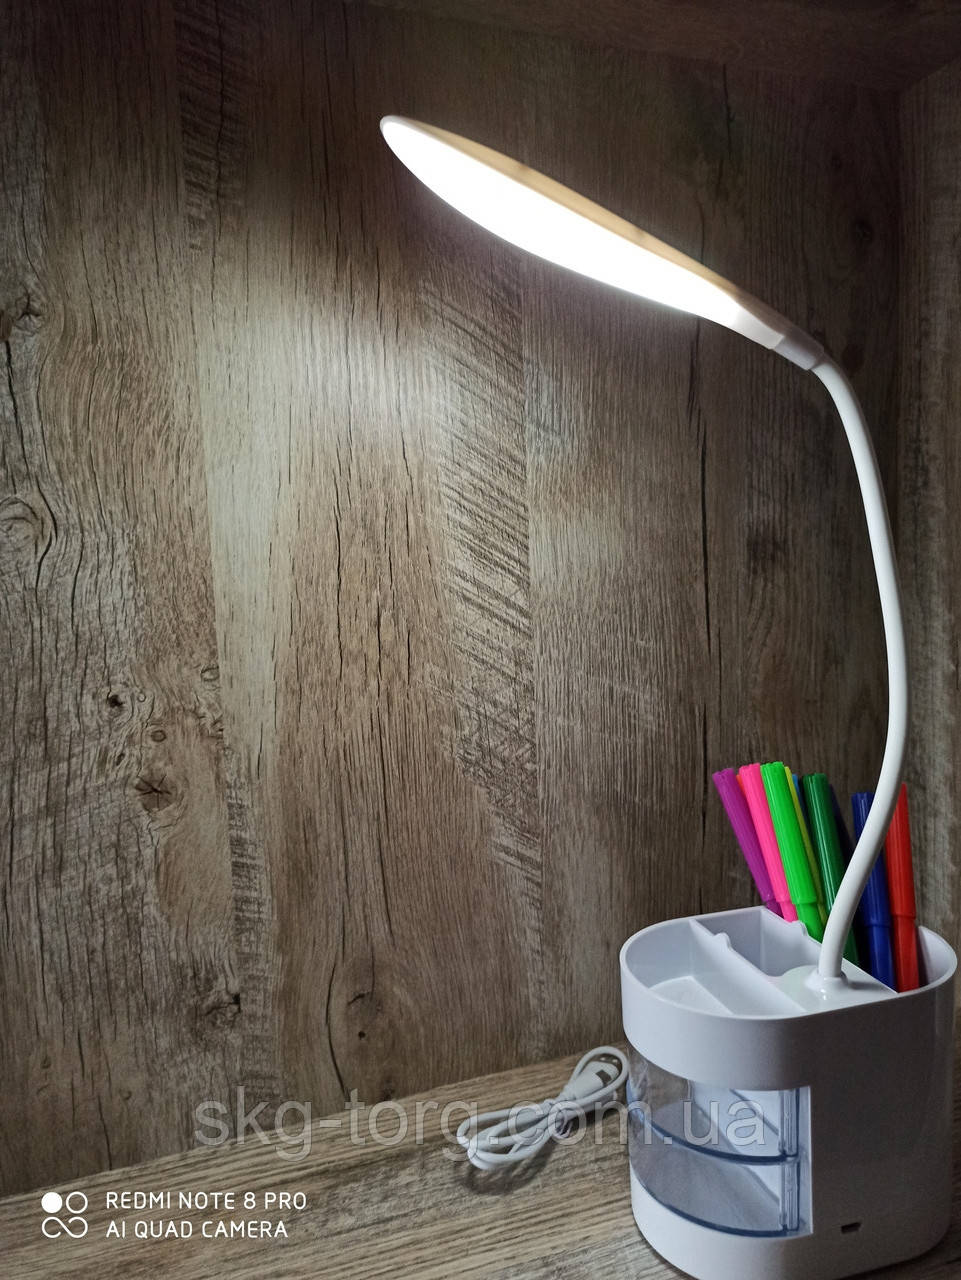 

Гибкая настольная LED лампа с сенсорной регулировкой яркости, Белый